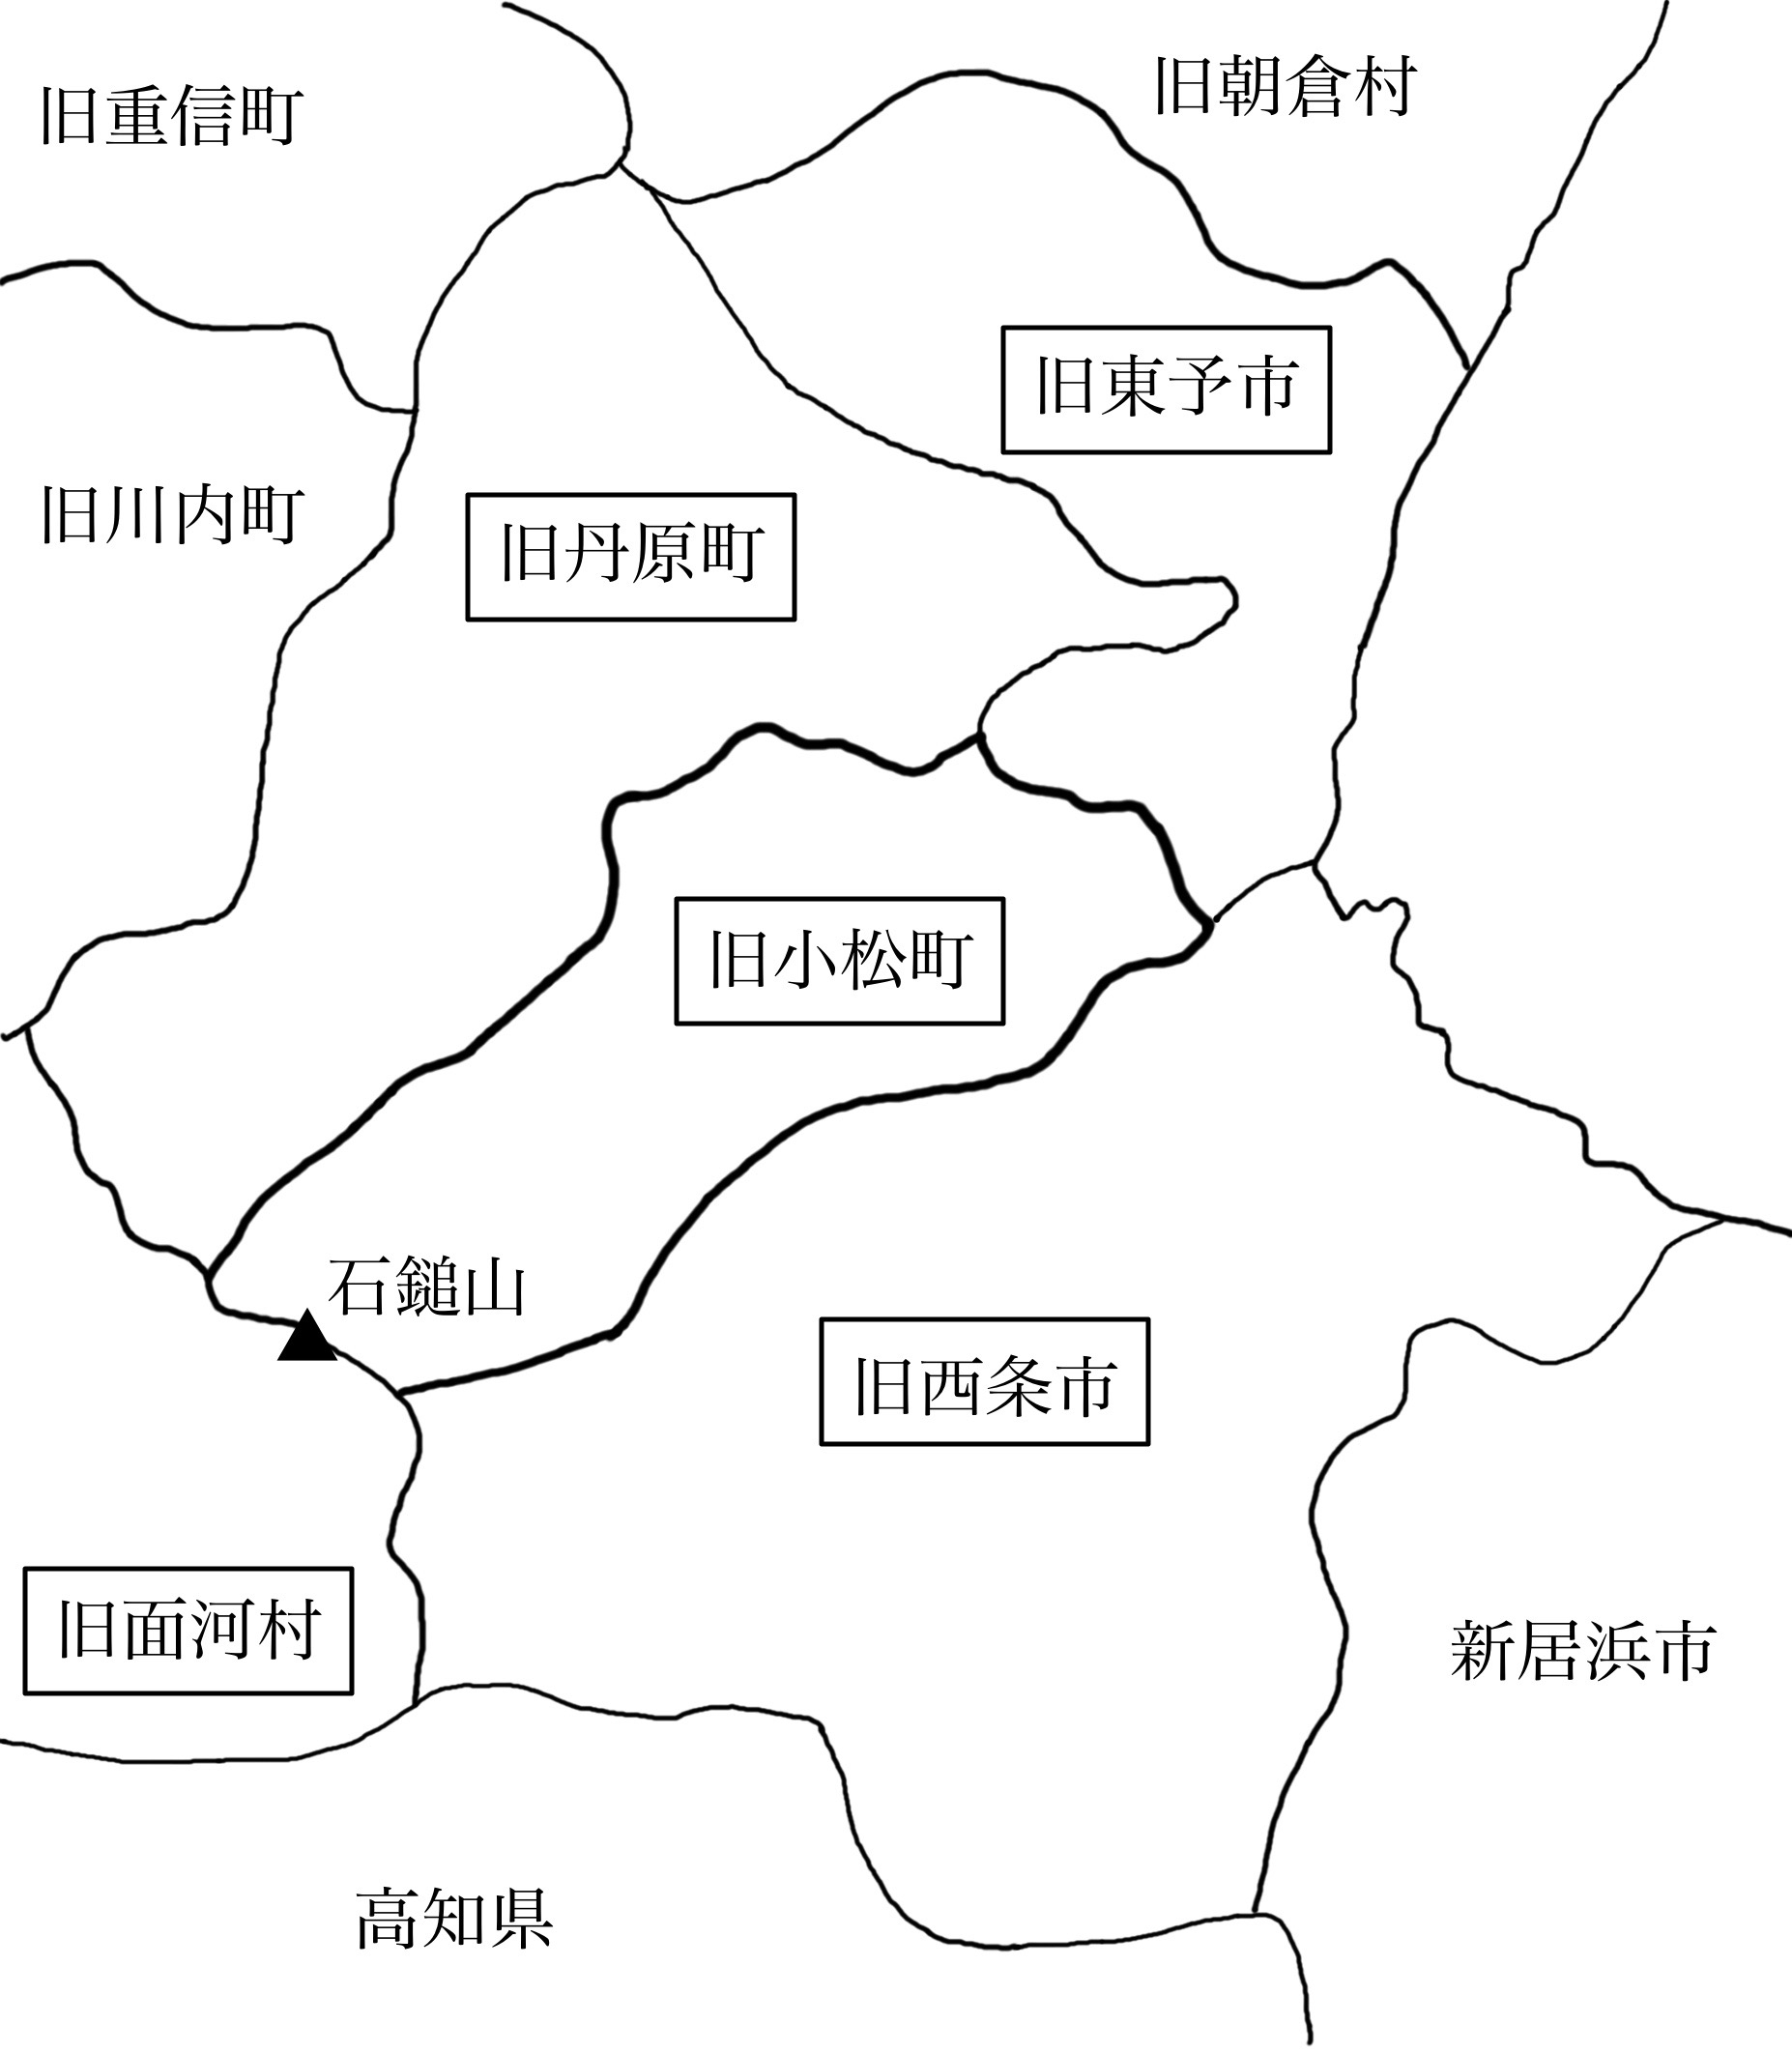 図表1-4-1　小松町の位置